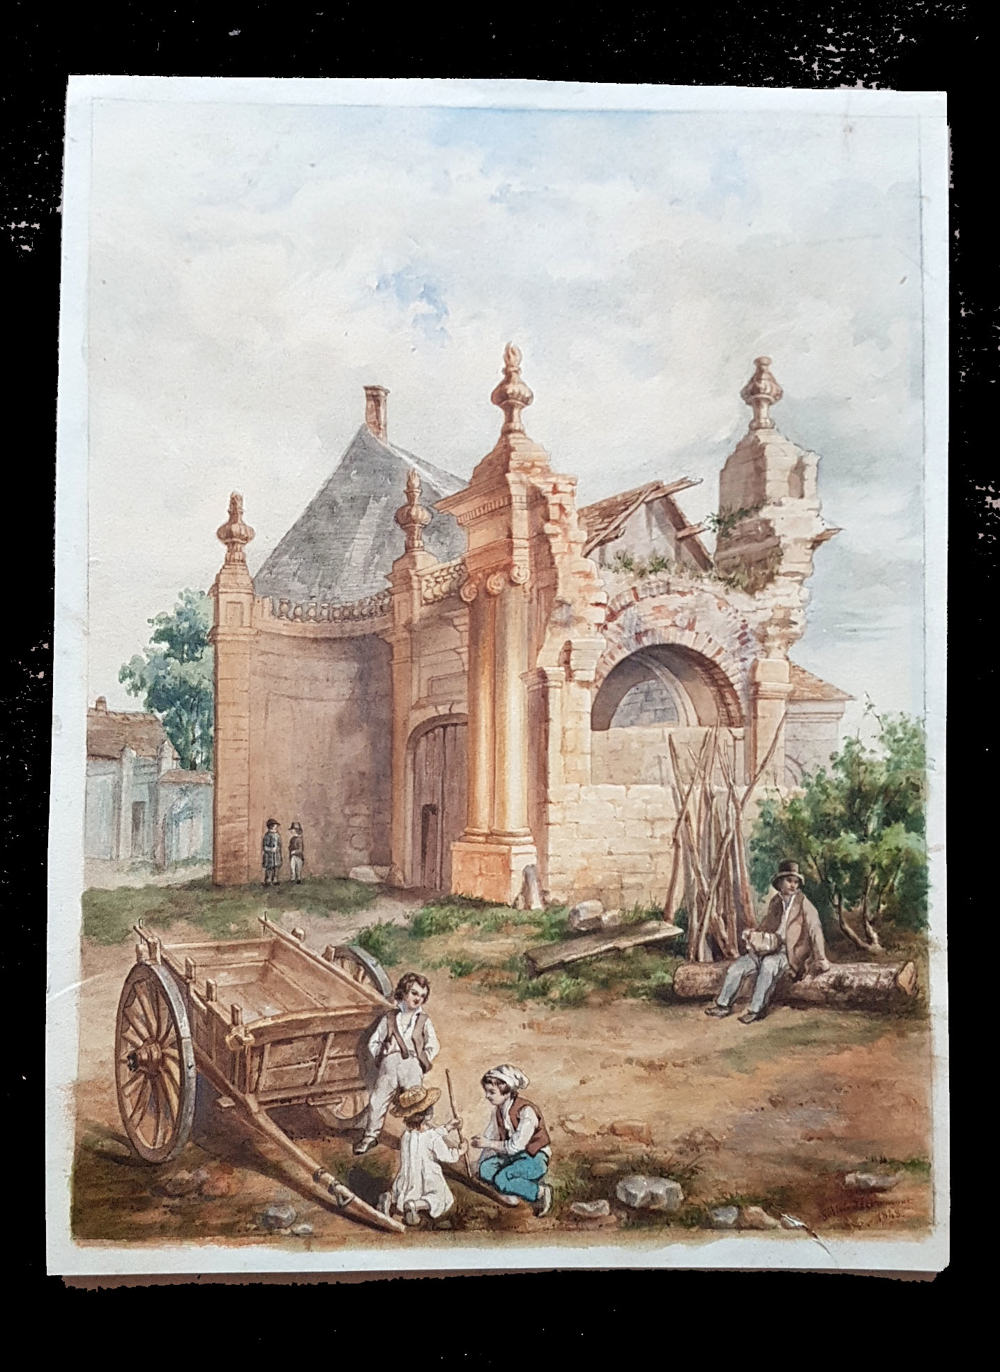 Aquarell 1848 Piranesi-Ruine Kinder spielen Pferdekarren Landhaus Signiert